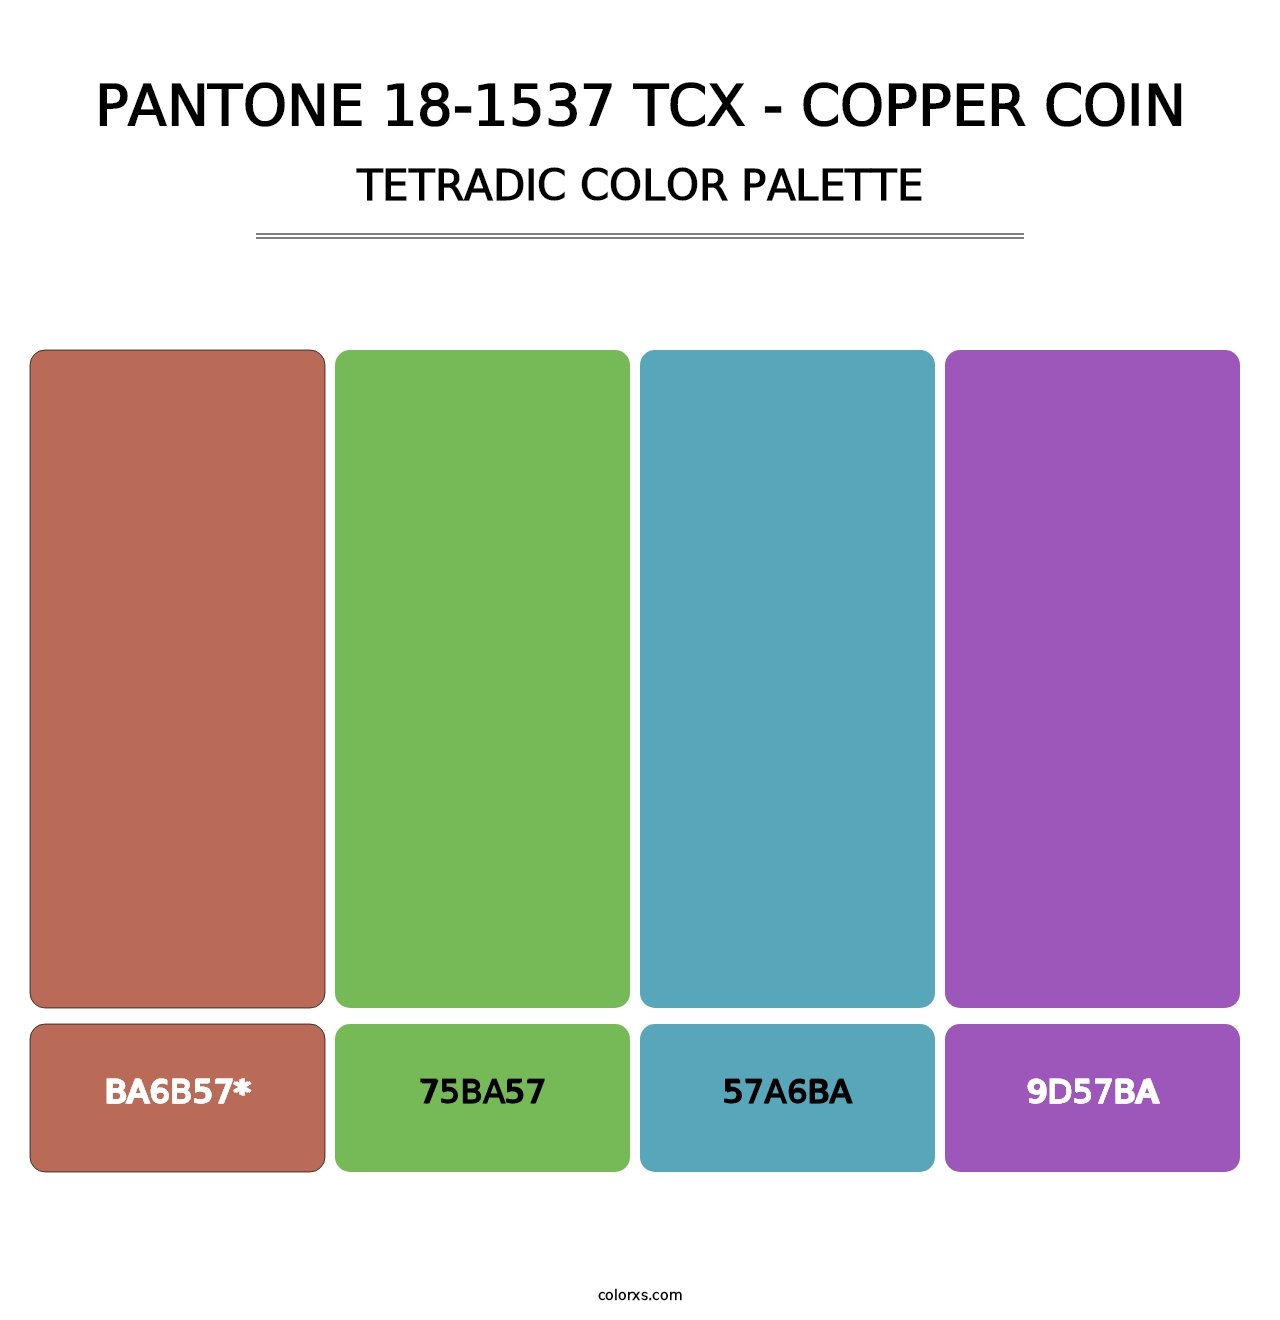 PANTONE 18-1537 TCX - Copper Coin - Tetradic Color Palette